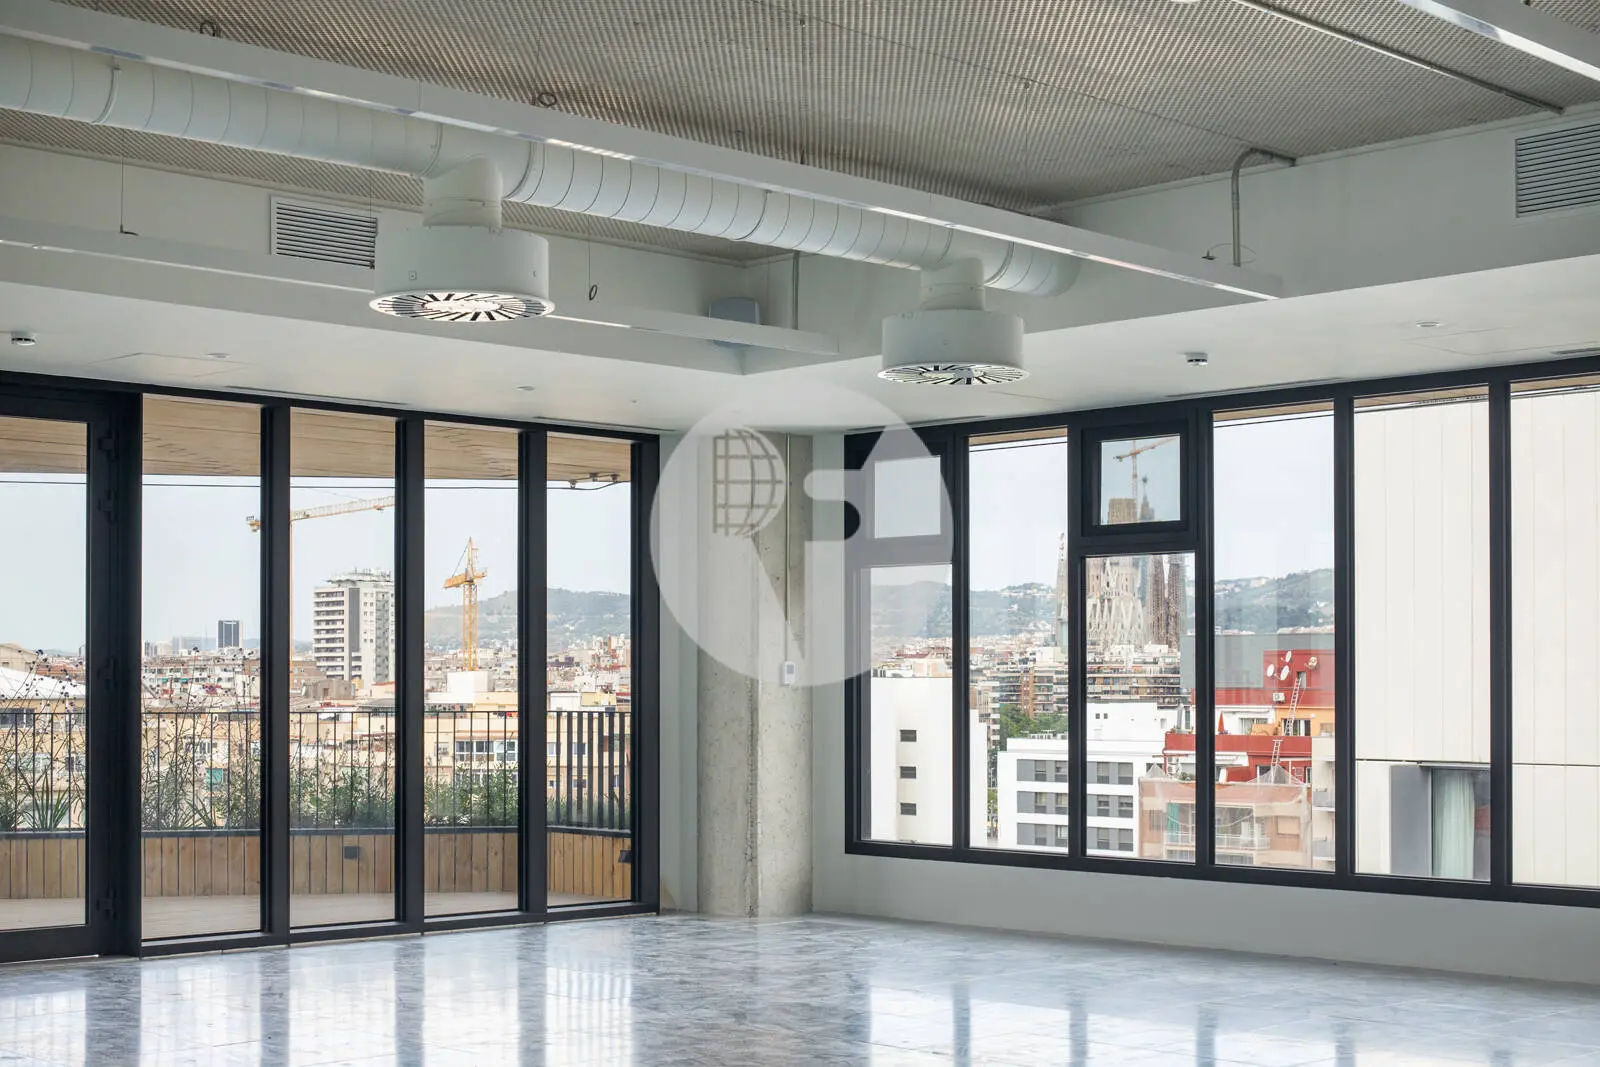 Oficina amb terrassa privativa al districte 22@Barcelona. C. Tanger 16